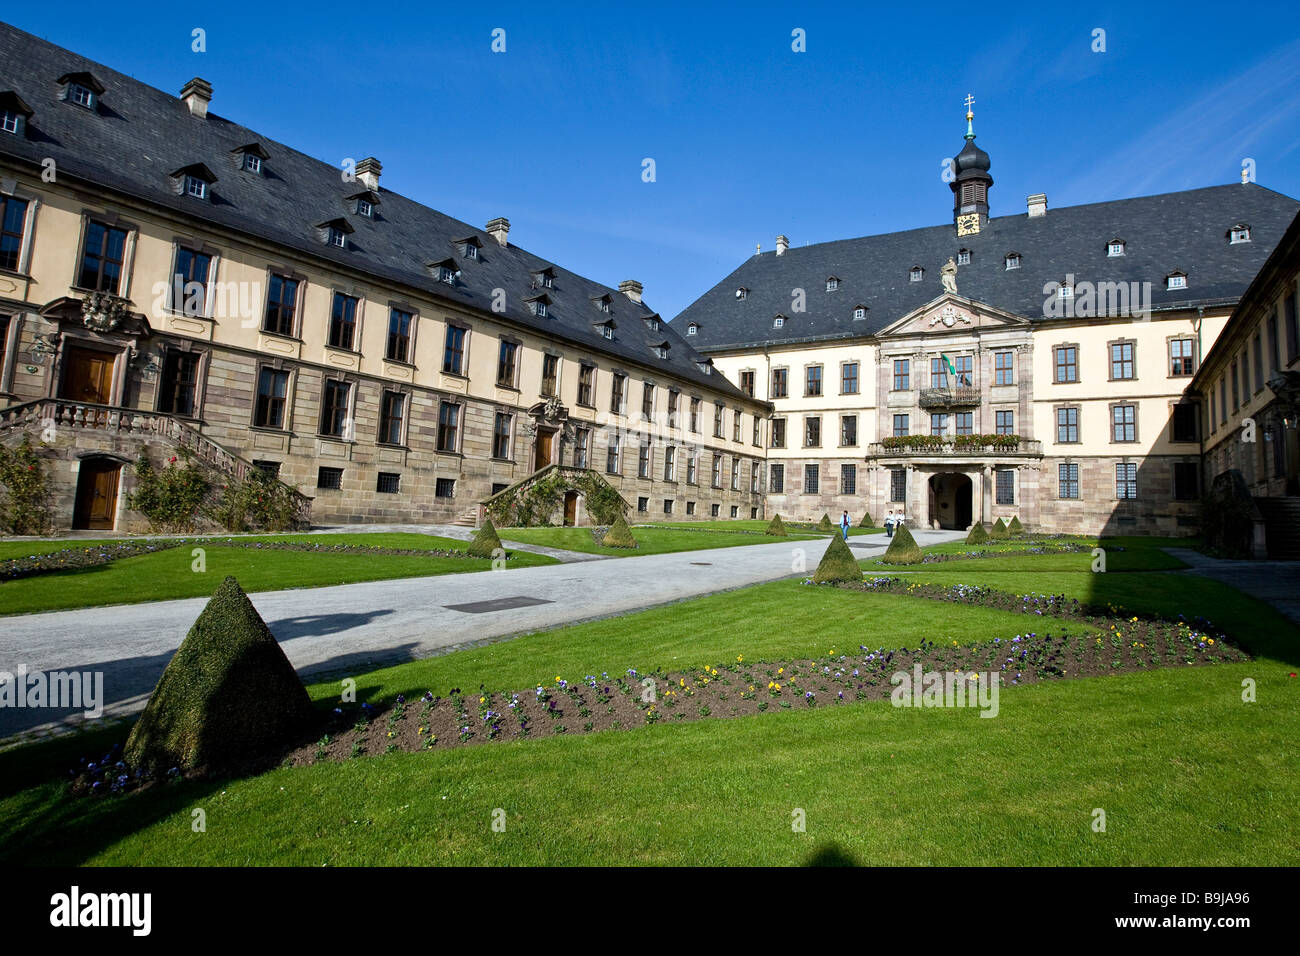 Fuldaer château baroque ville, Fulda, Hesse, Germany, Europe Banque D'Images